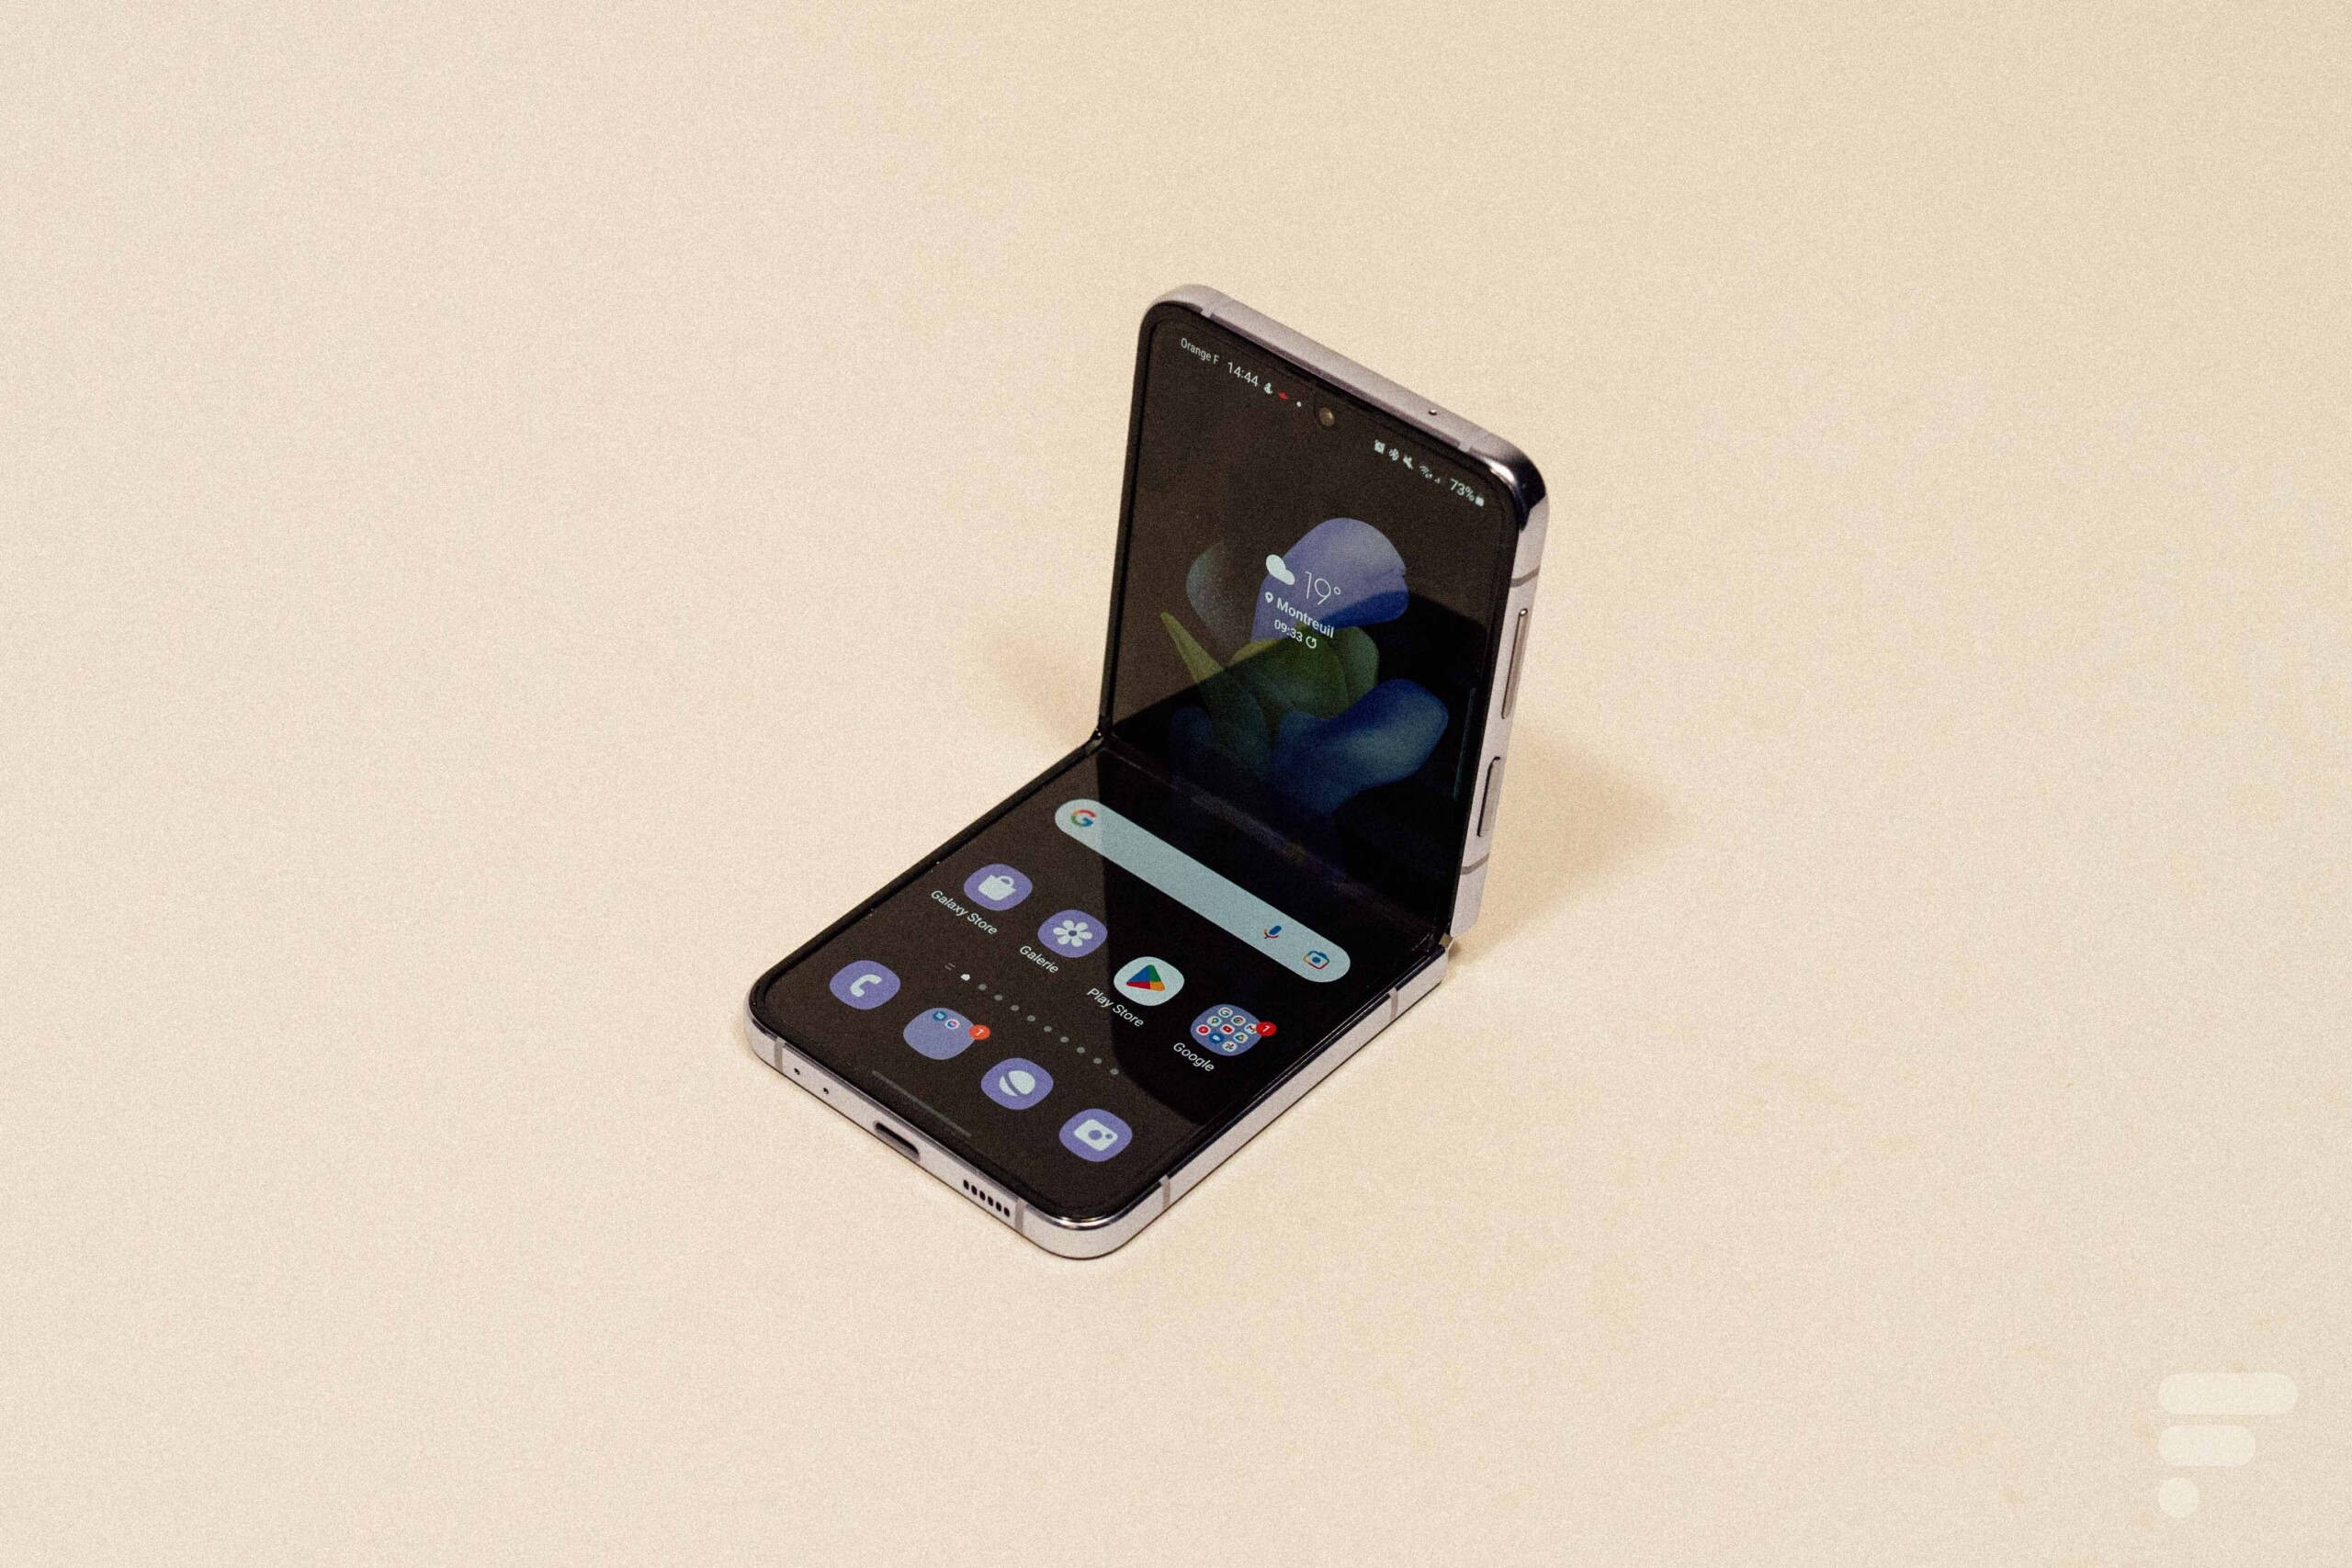 Téléphone portable débloqué Samsung Galaxy Z Flip 5G 6,7 pouces